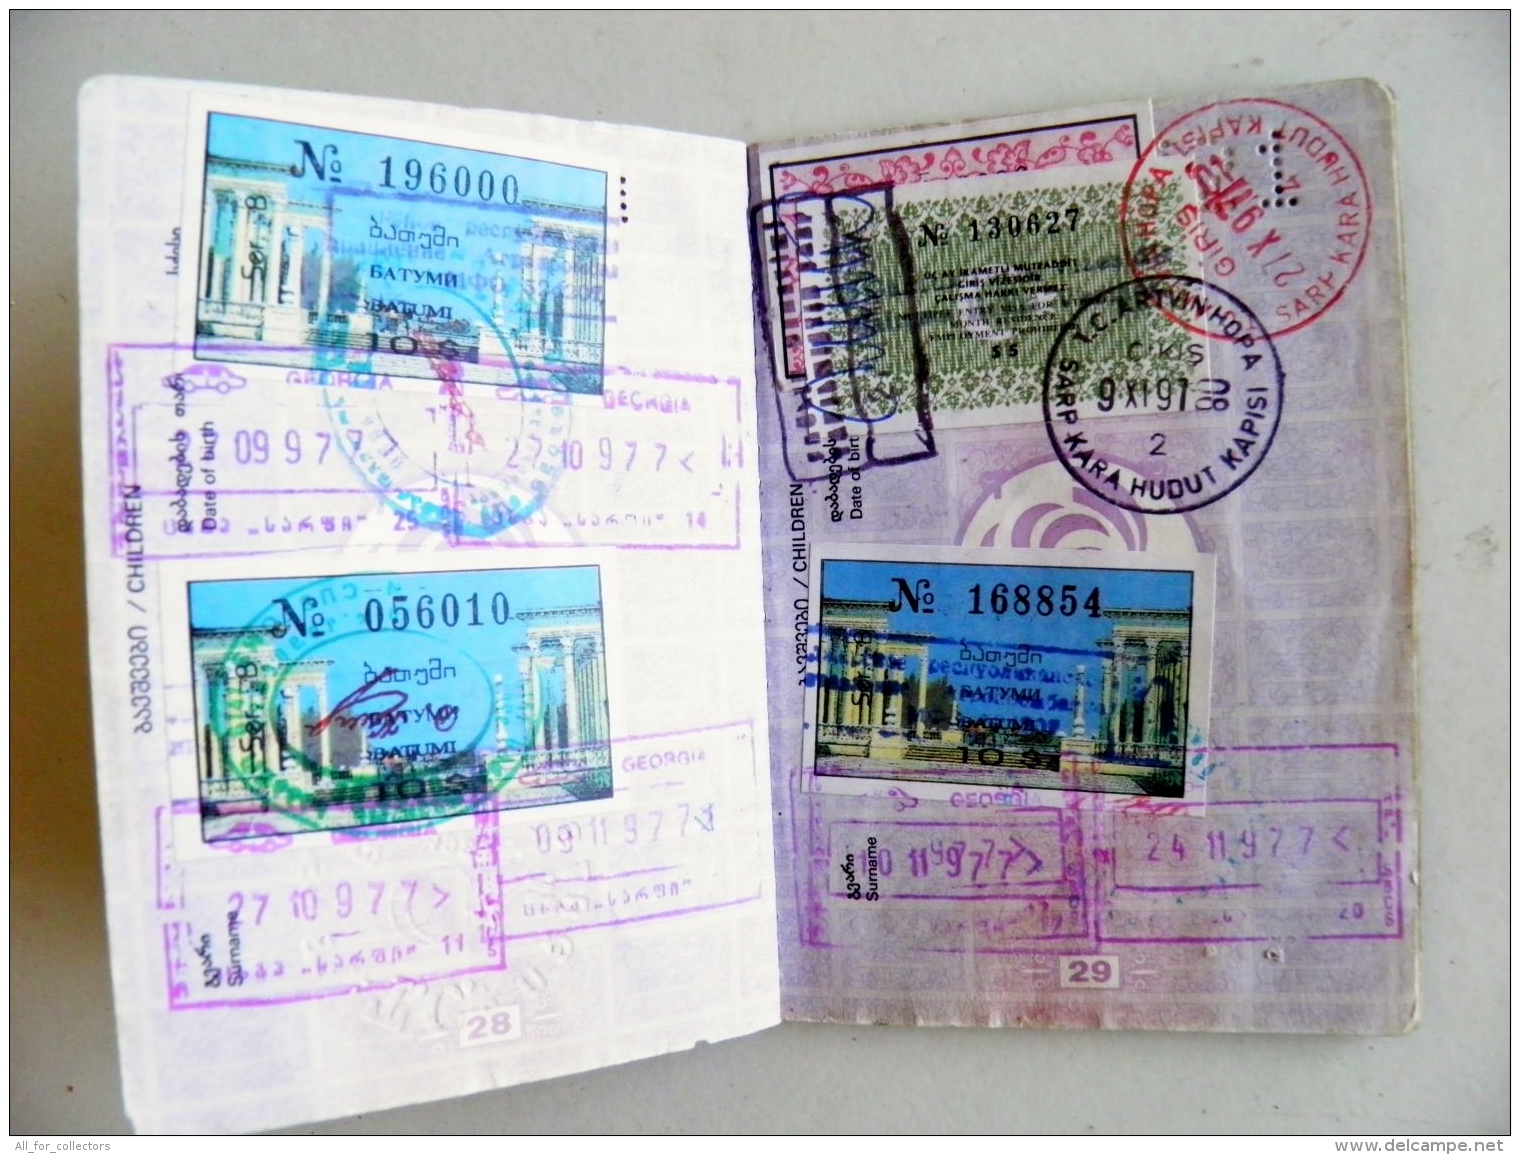 passport Georgia 1996 plenty visa to turkey 18 scans